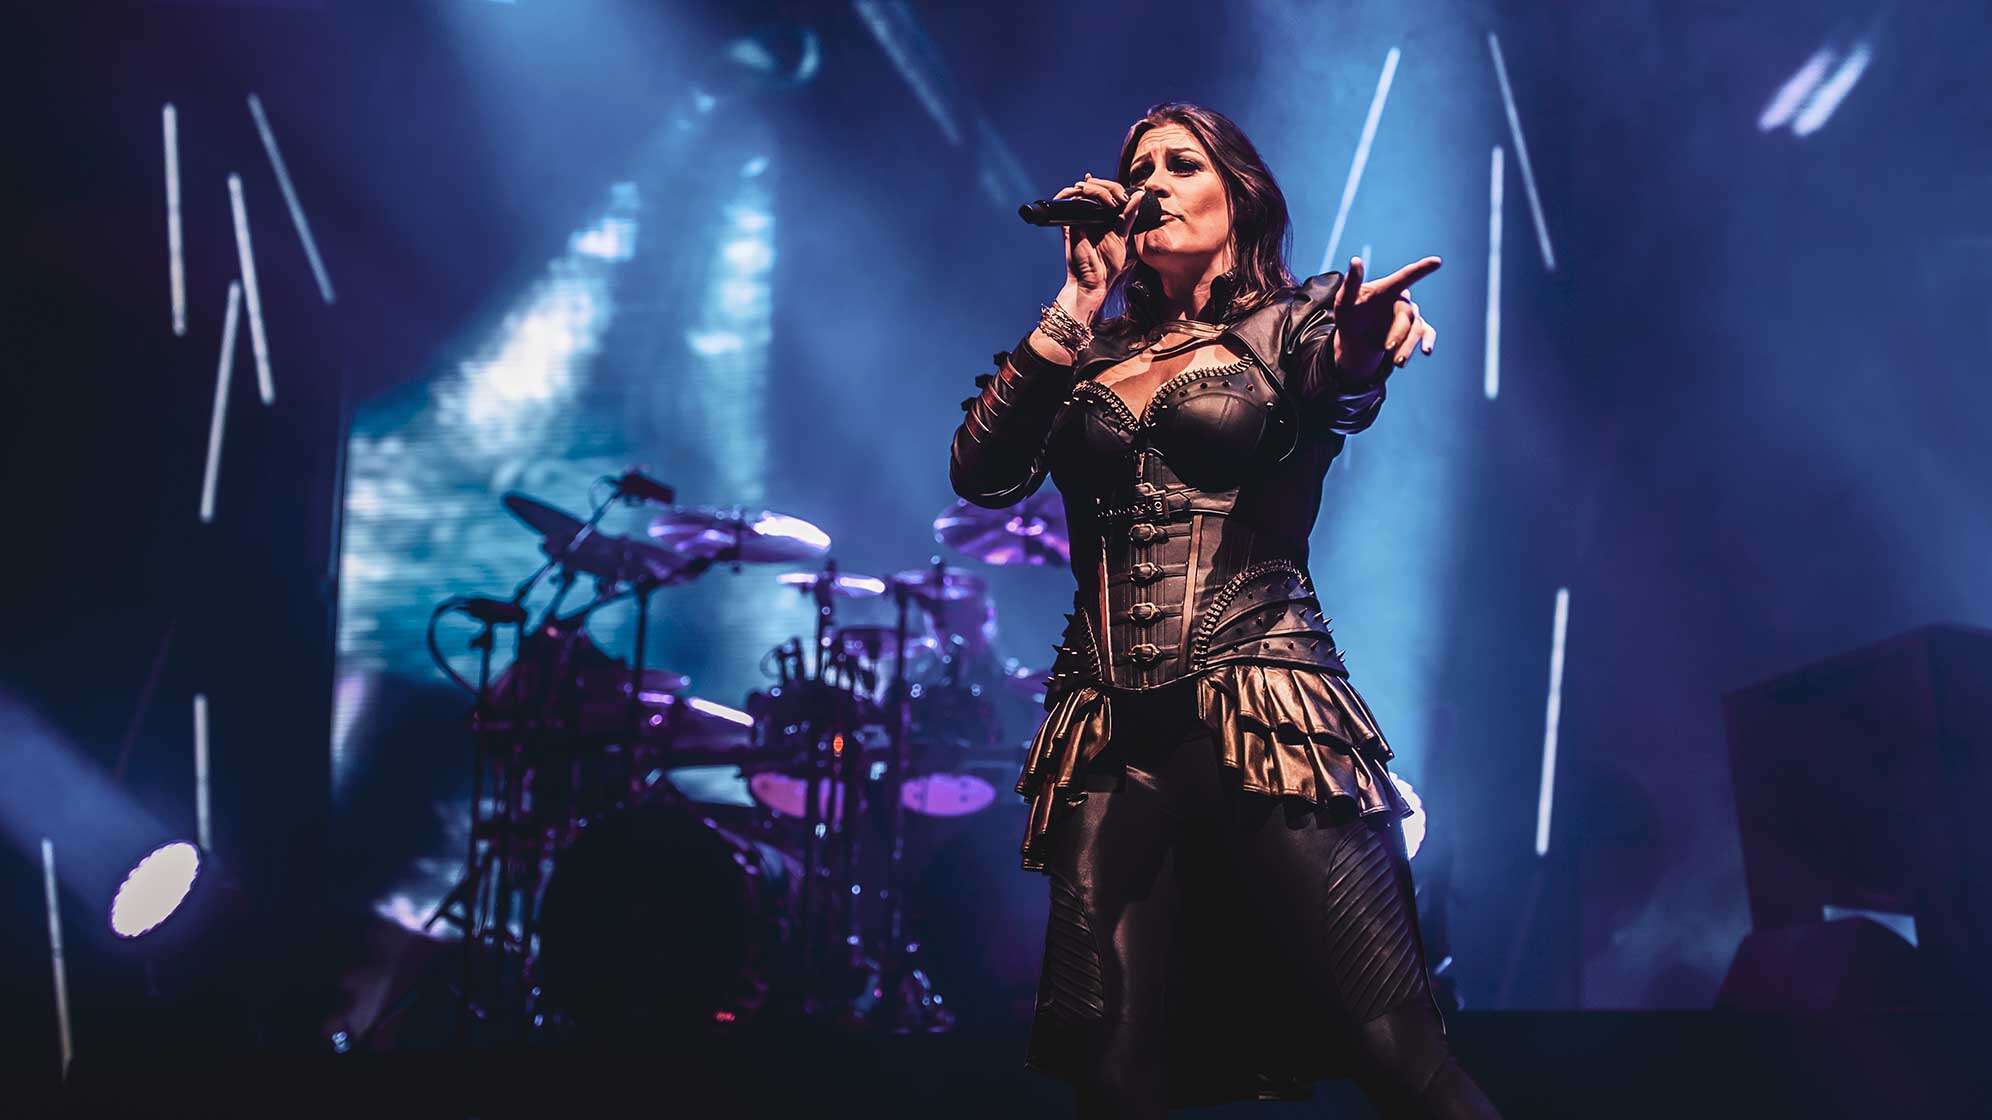 Sängerin Floor Jansen auf der Bühne ihrer Band Nightwish vor blauem Hintergrund.